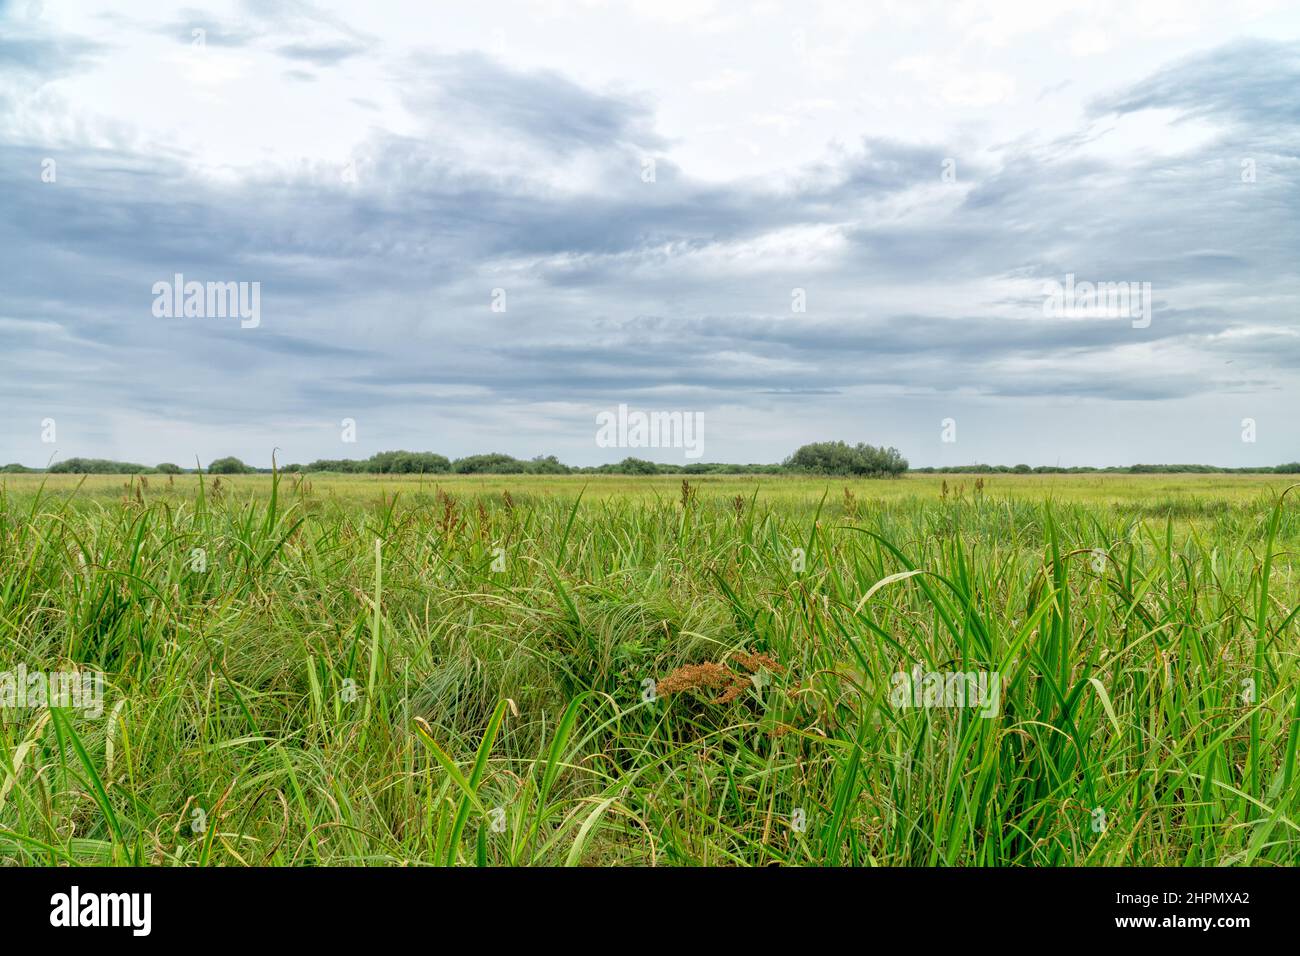 Landschaft des Biebrza-Nationalparks, Feuchtgebiete, Wiesen, Sommer, helliger Himmel. Woiwodschaft Podlachien, Polen. Stockfoto